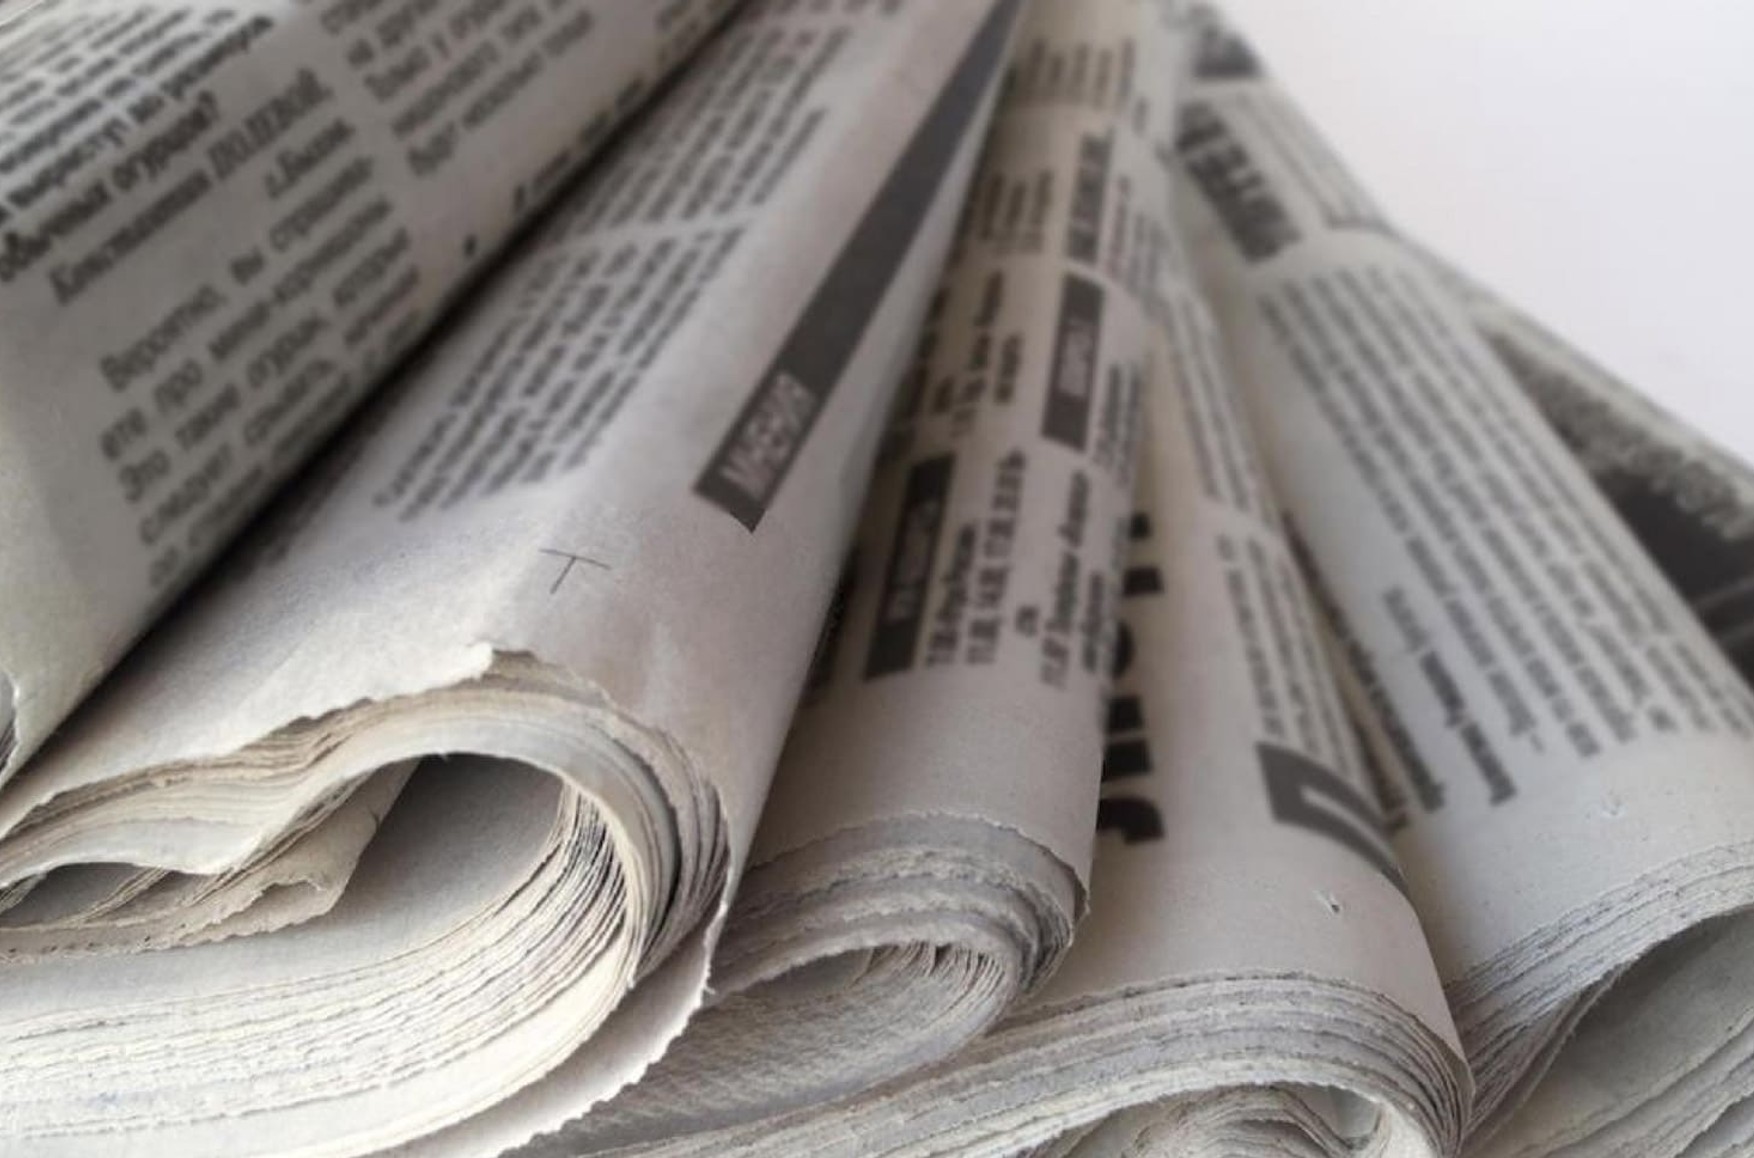 «Новая новгородская газета», работавшая 23 года, объявила о закрытии из-за цензуры и недостатка финансирования